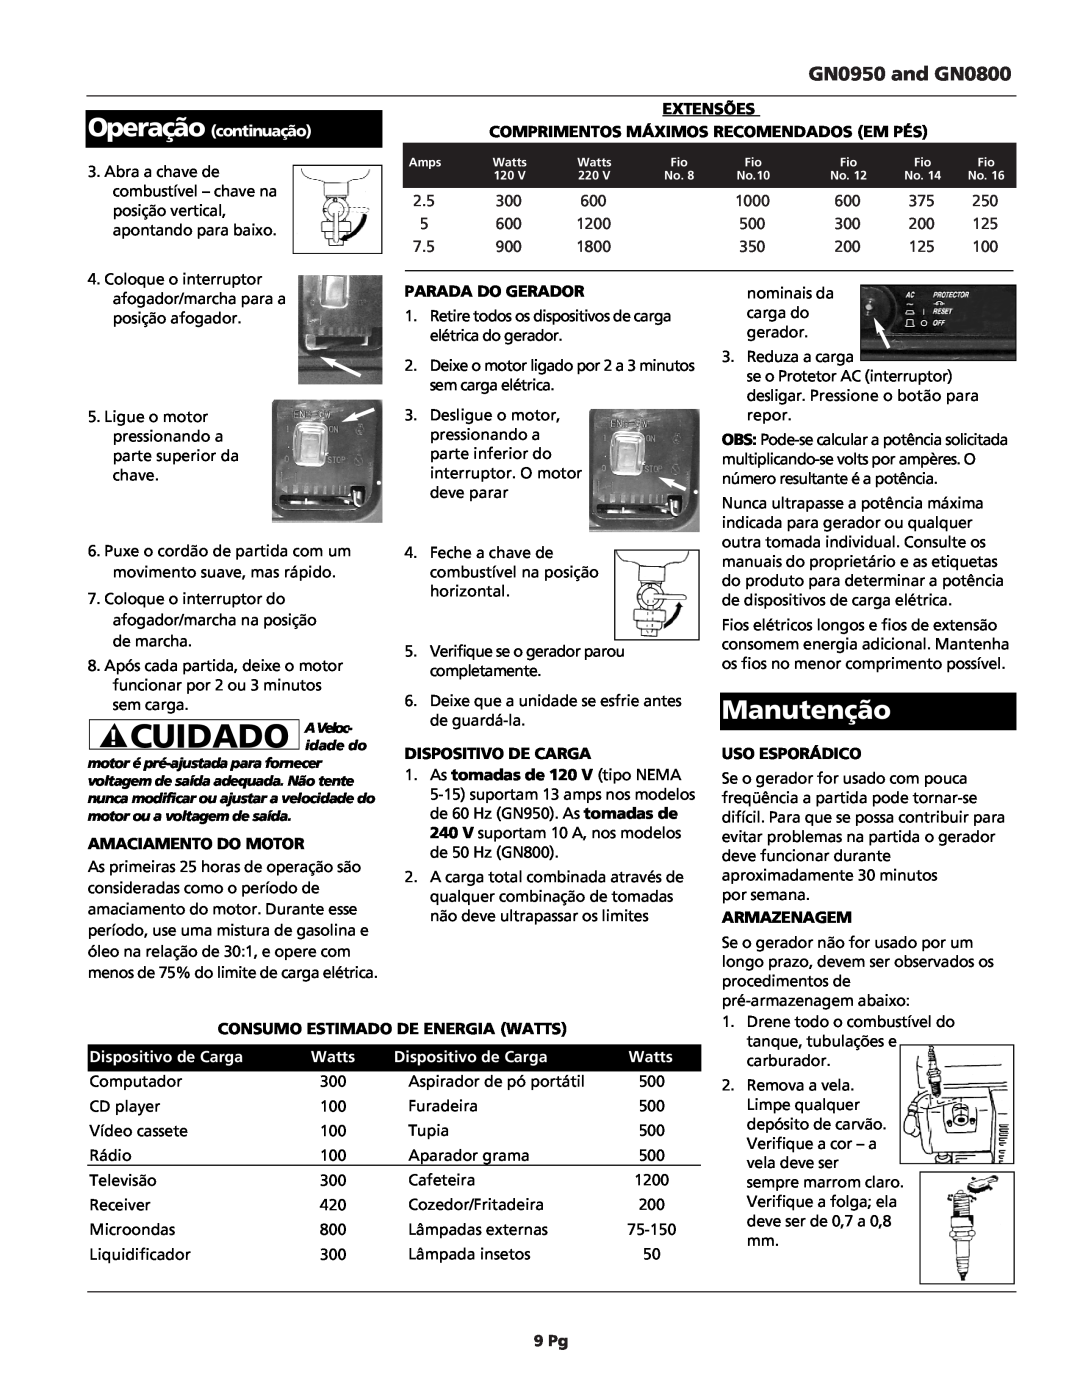 Campbell Hausfeld warranty Manutenção, Cuidado, GN0950 and GN0800 